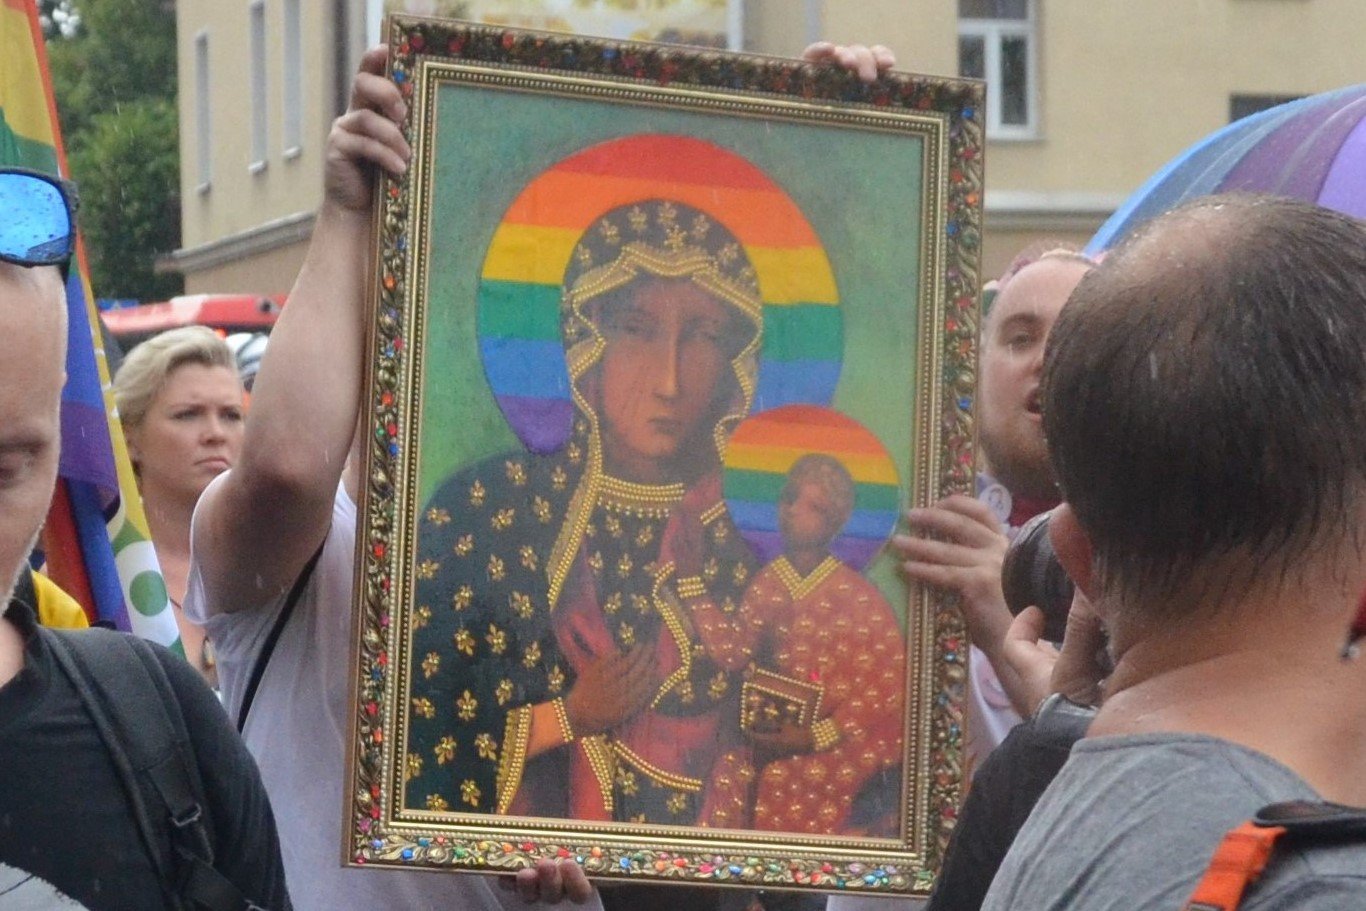 affiche van maagd Maria met regenboogaureool